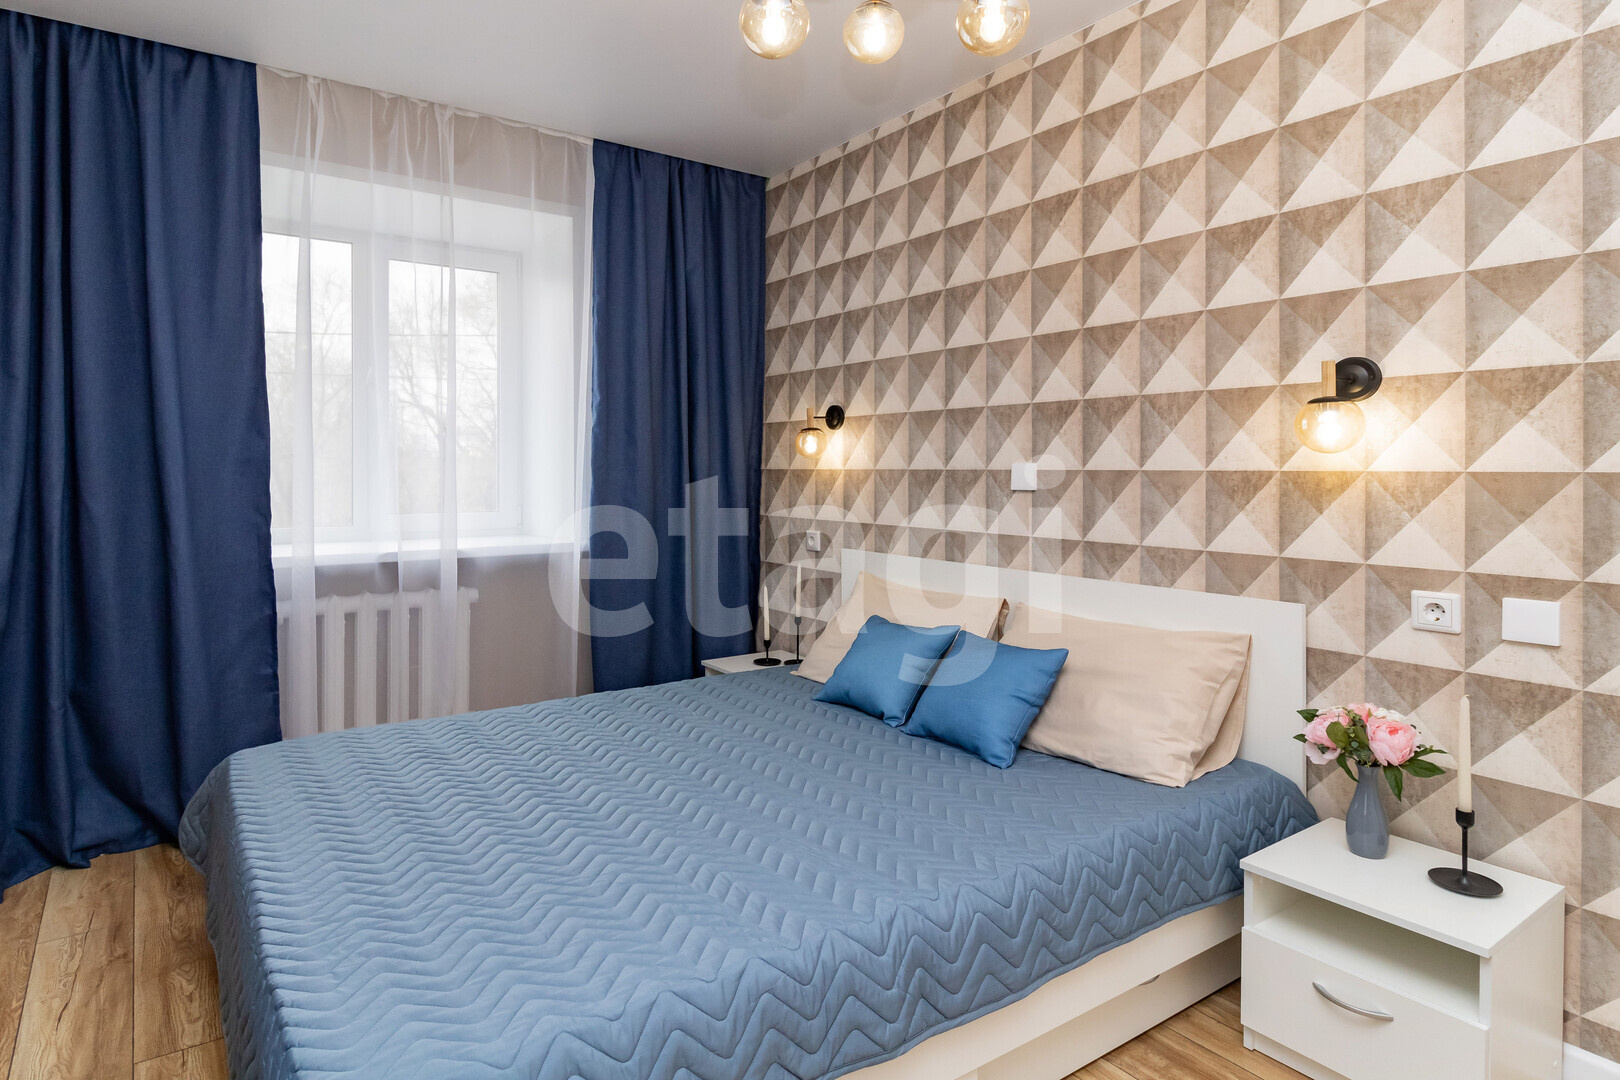 Стоимость одного квадрата в этой квартире составляет около 90 тысяч рублей